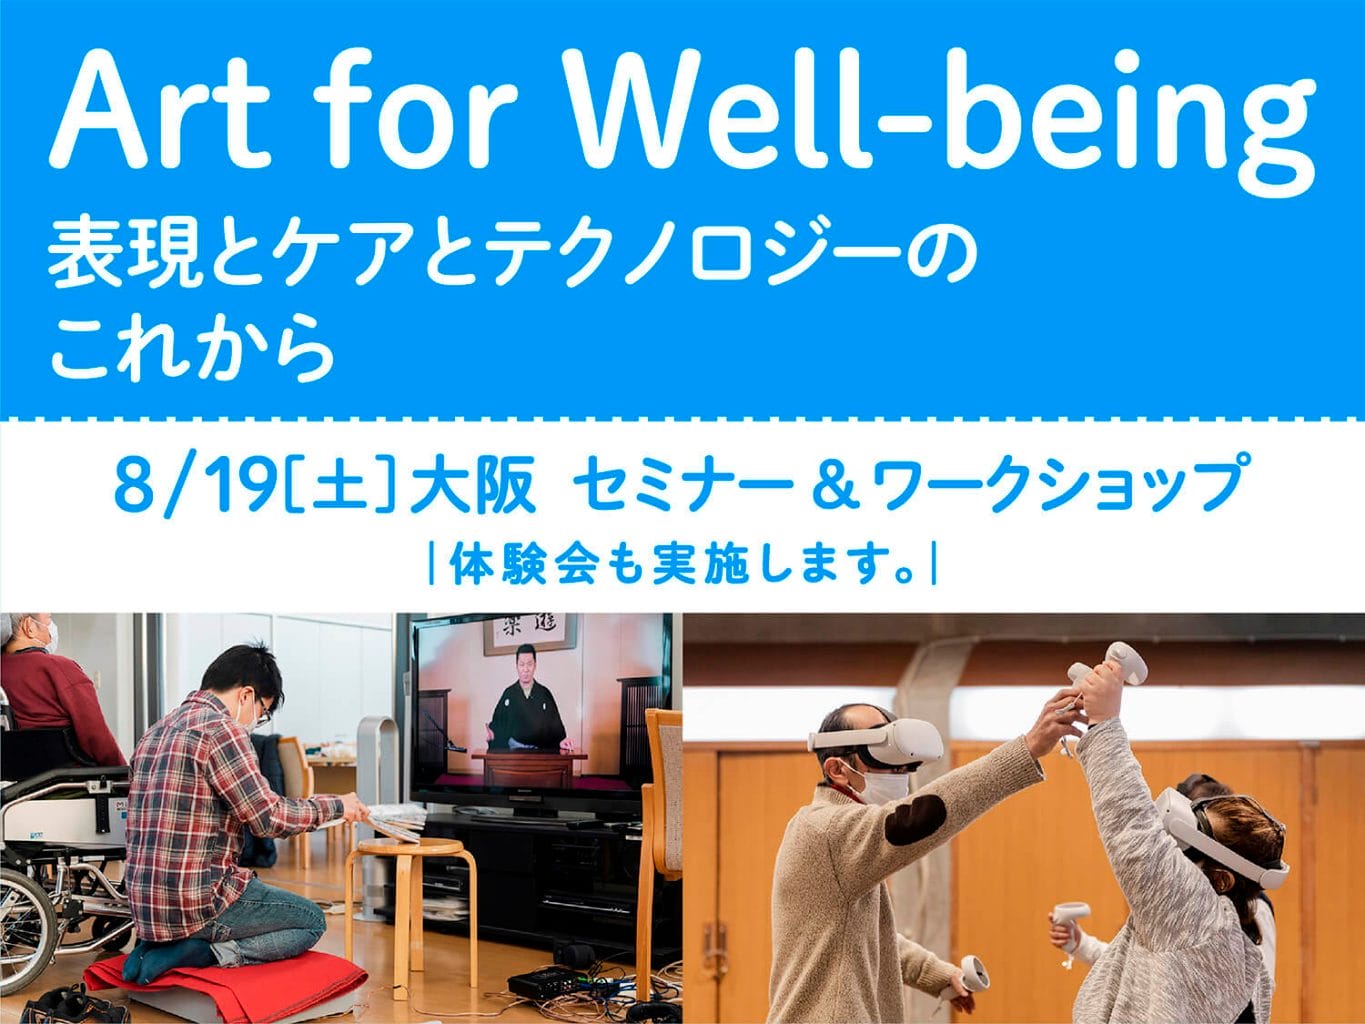 たんぽぽの家が、表現とケアとテクノロジーのこれからを考えるプロジェクト「Art for Well-being」の成果報告セミナーを京橋にて開催。